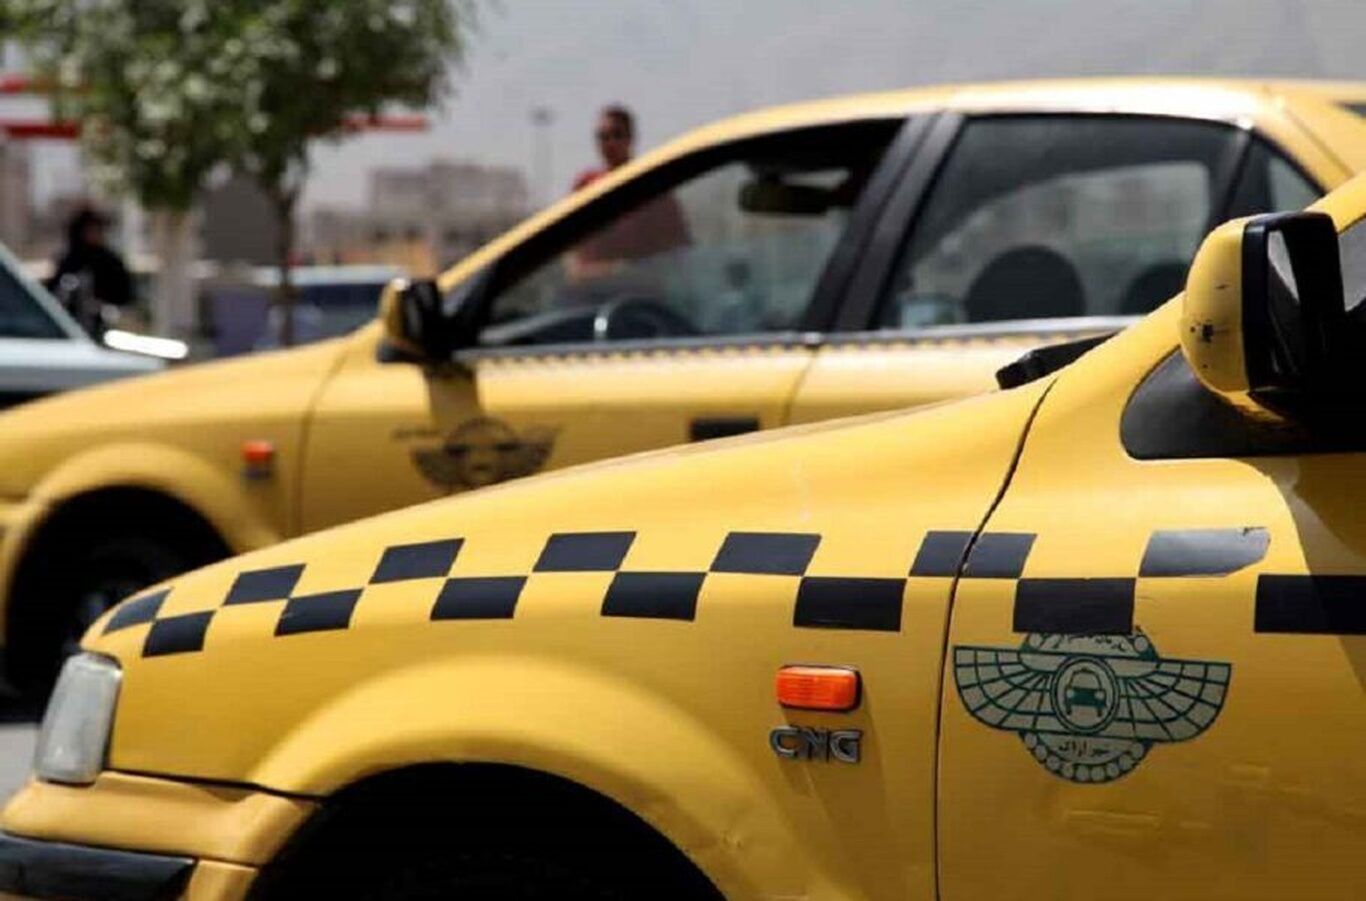 افزایش کرایه تاکسی در زمان باران از سوی سازمان نظارت بر تاکسیرانی تأیید شد